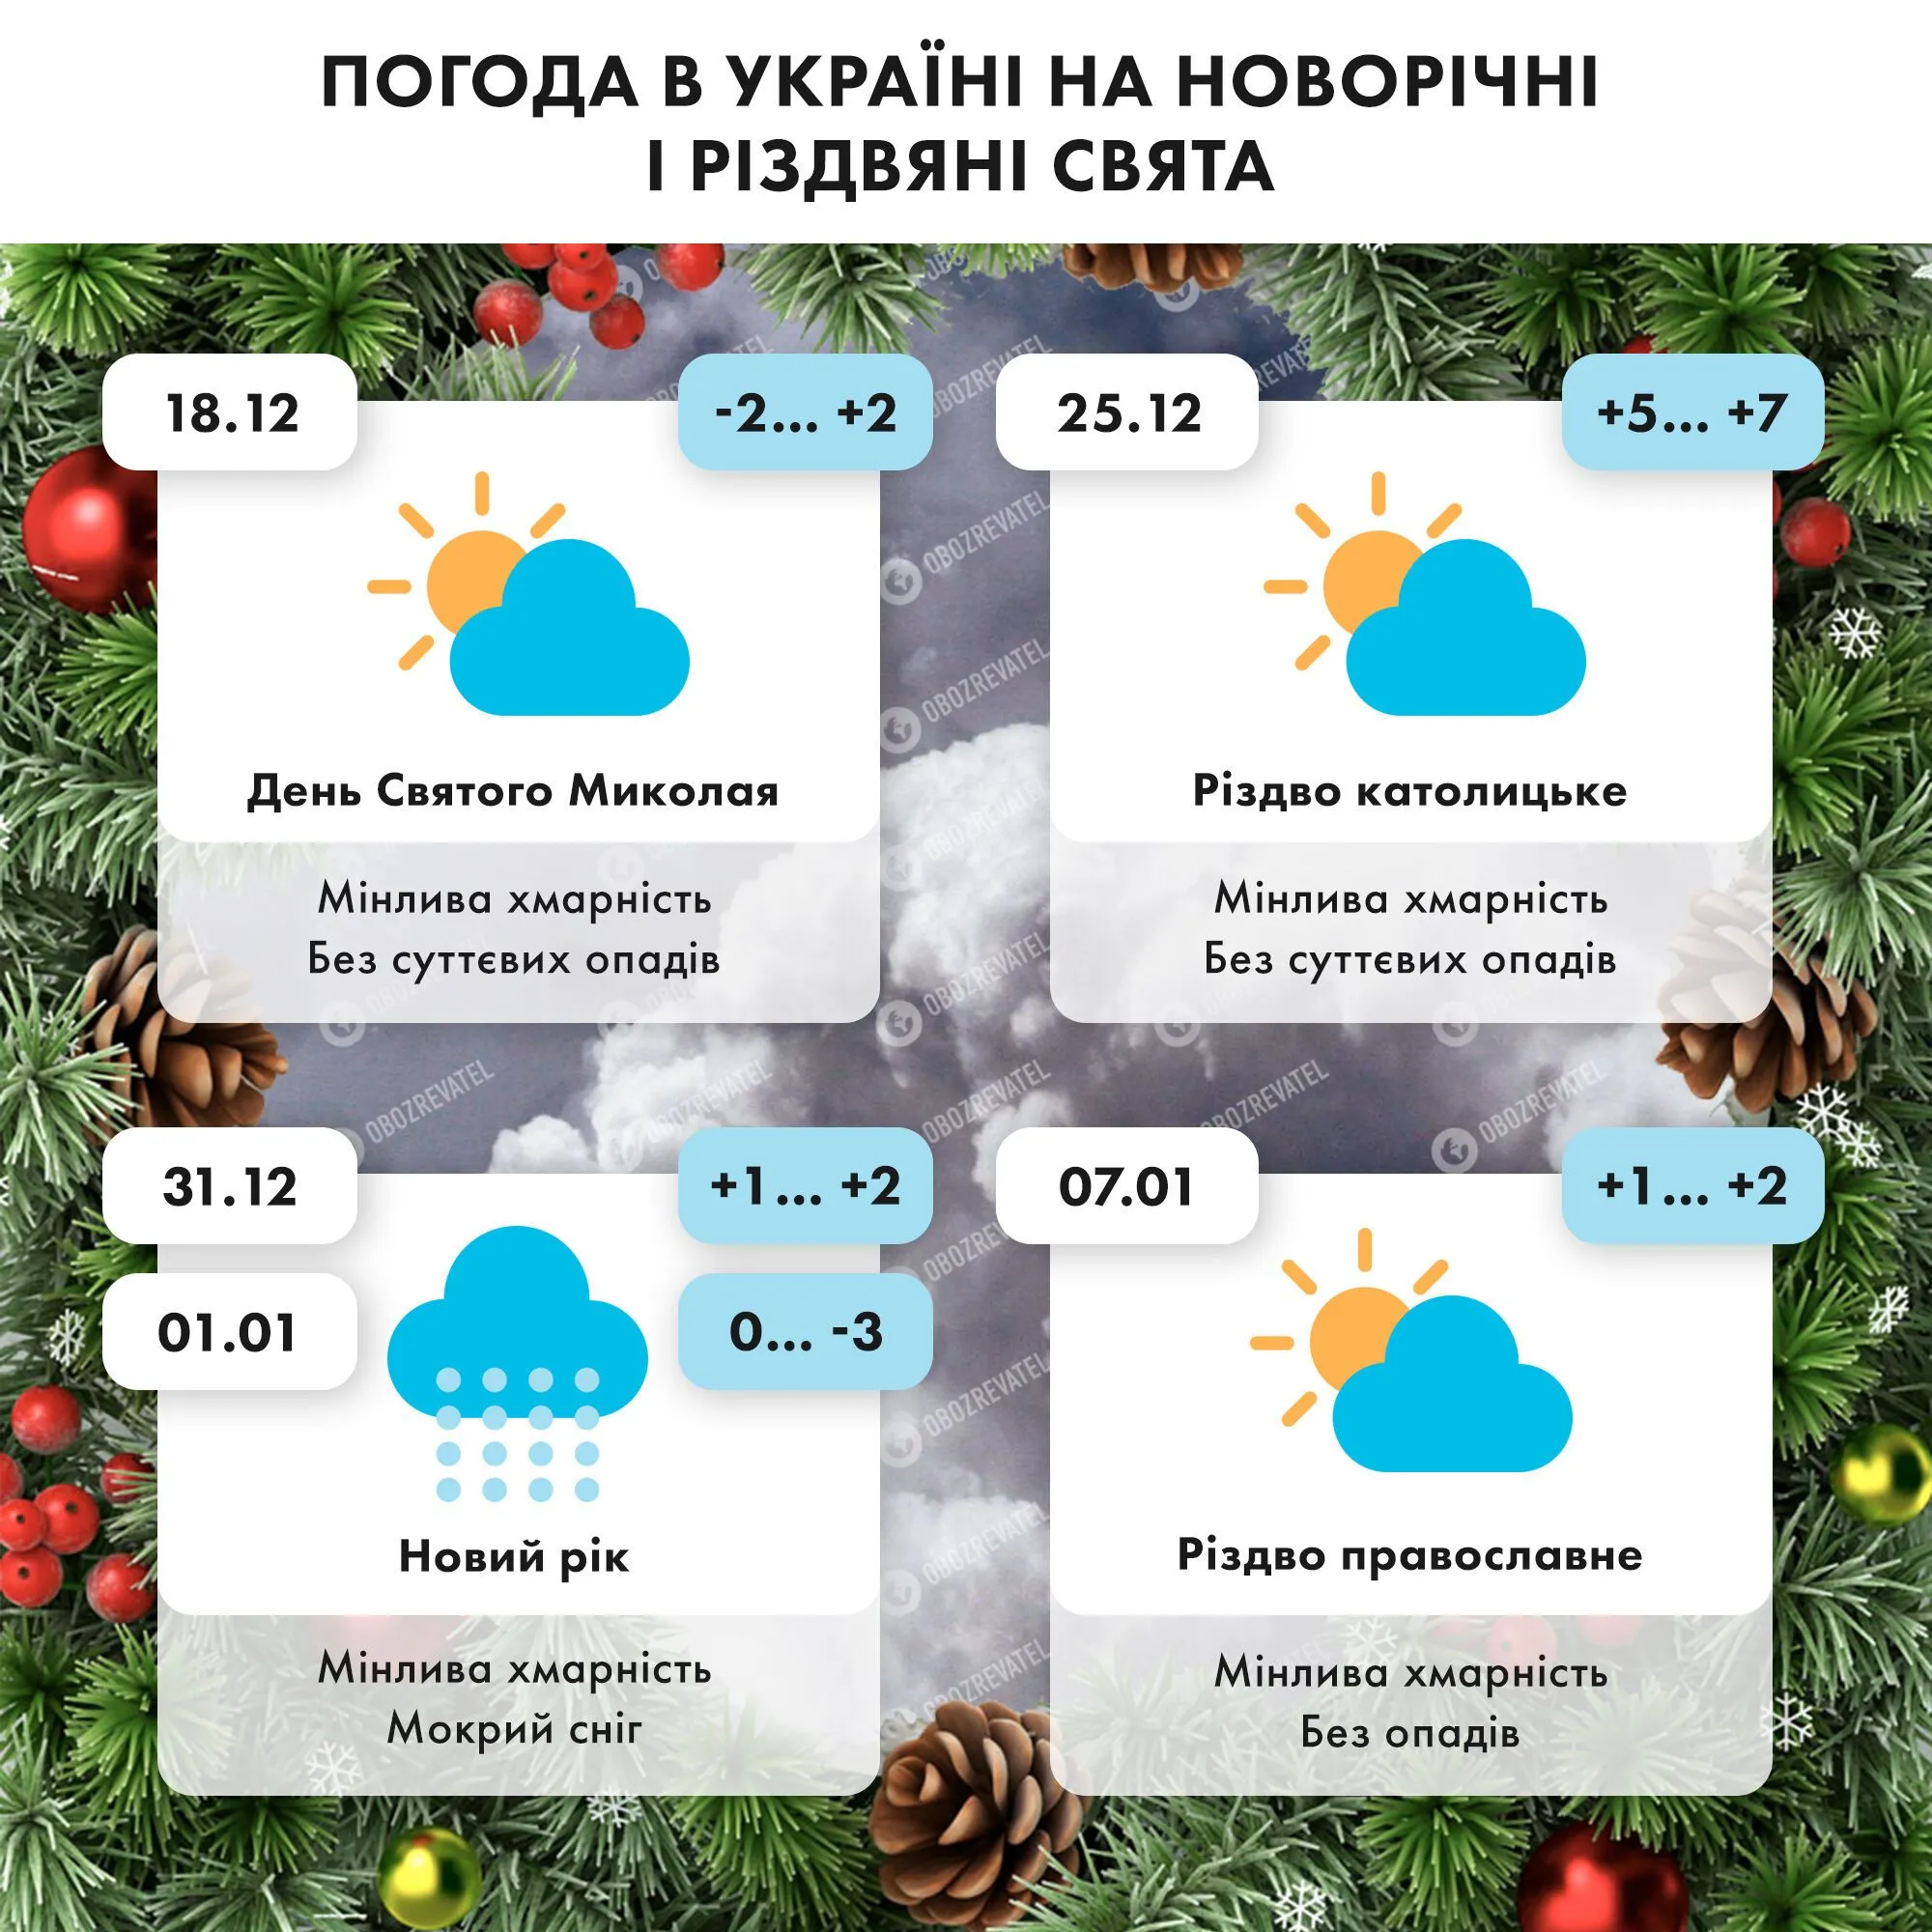 Погода на новогодние и рождественские праздники в Украине